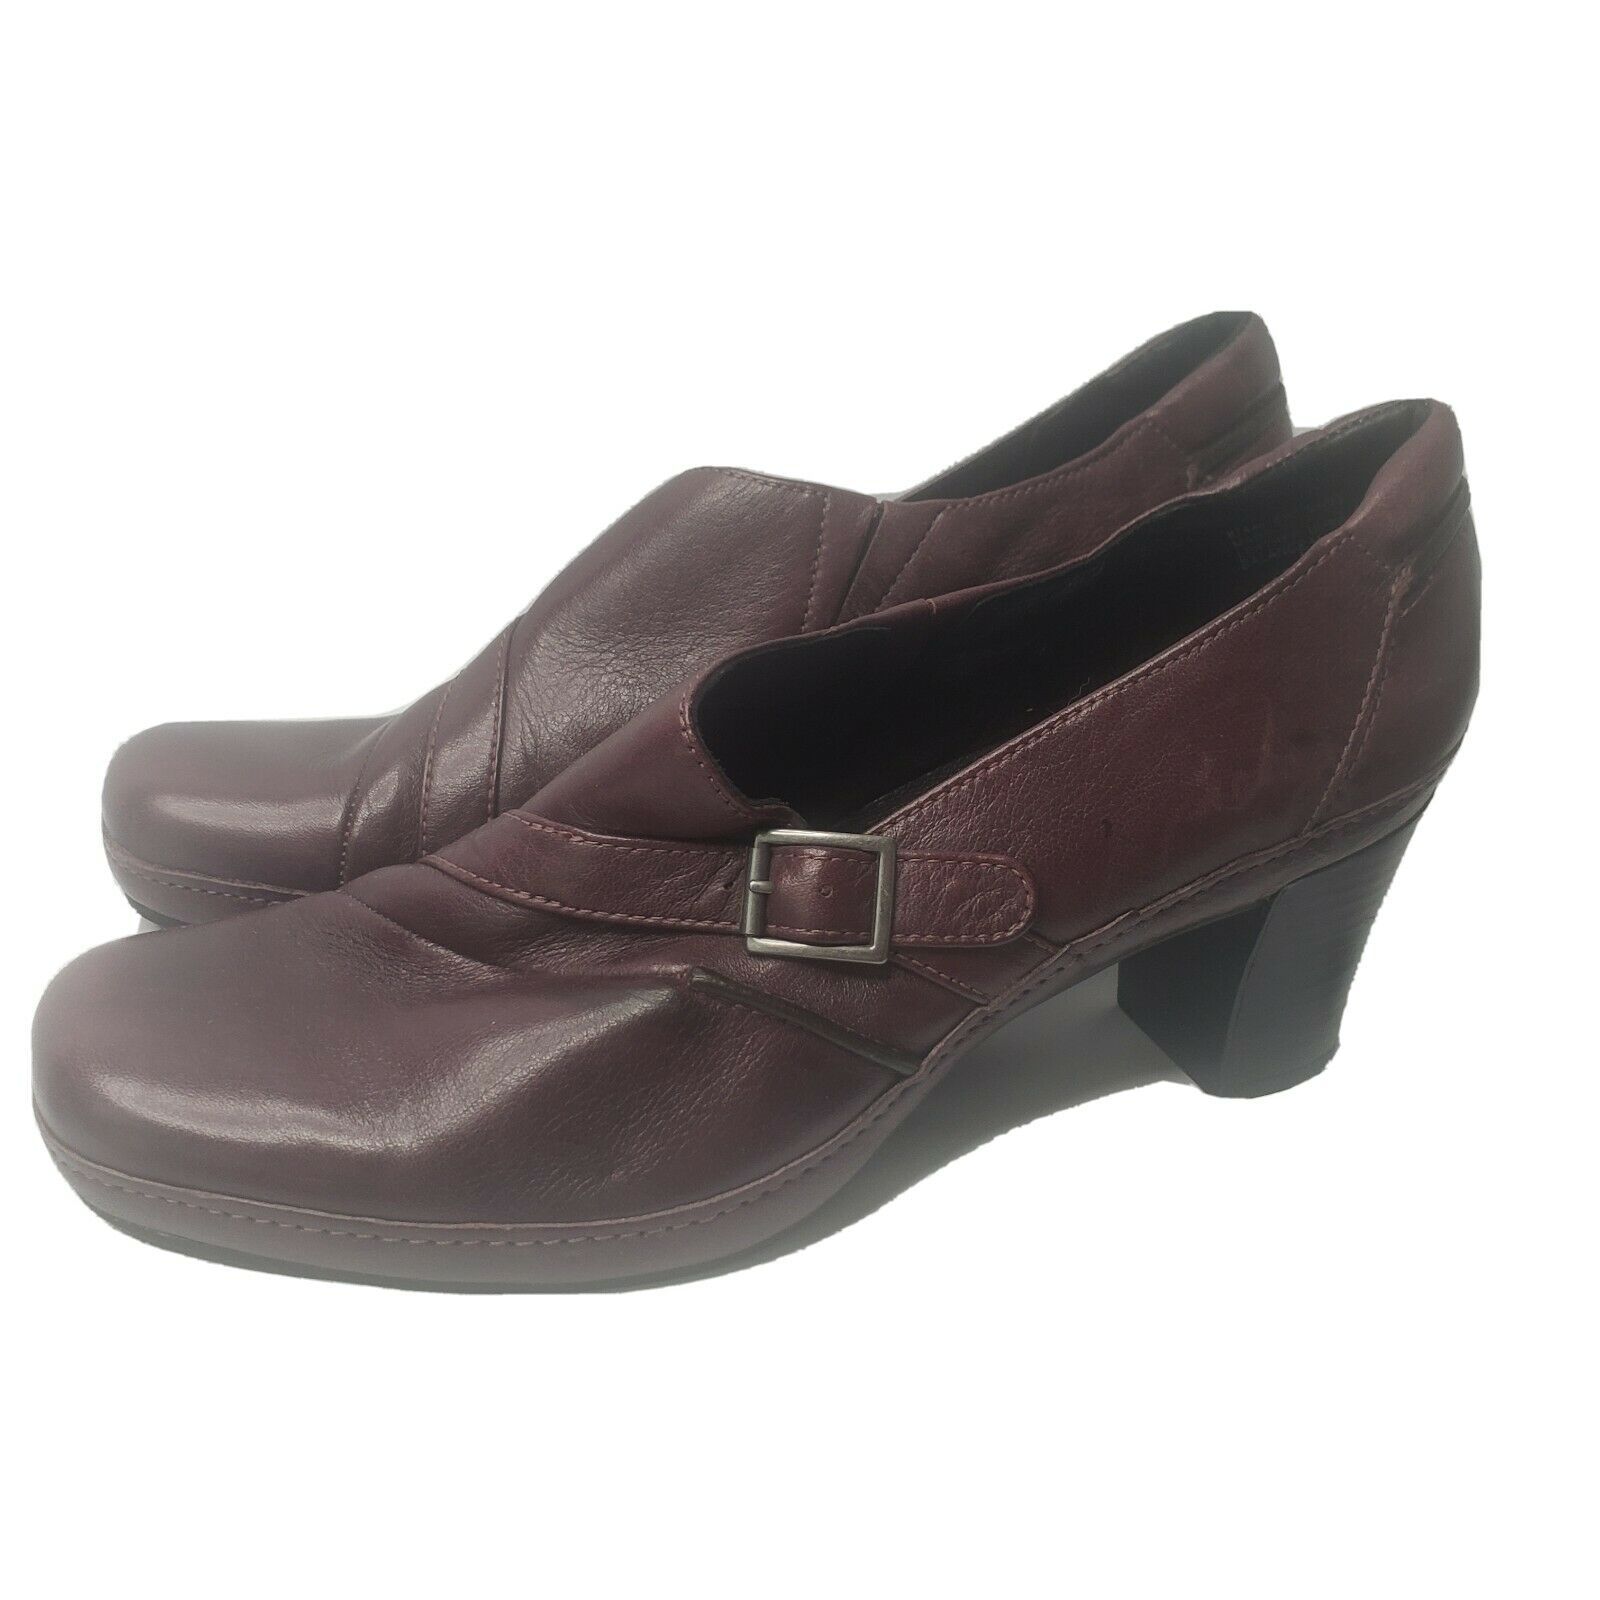 clarks artisan ladies shoes